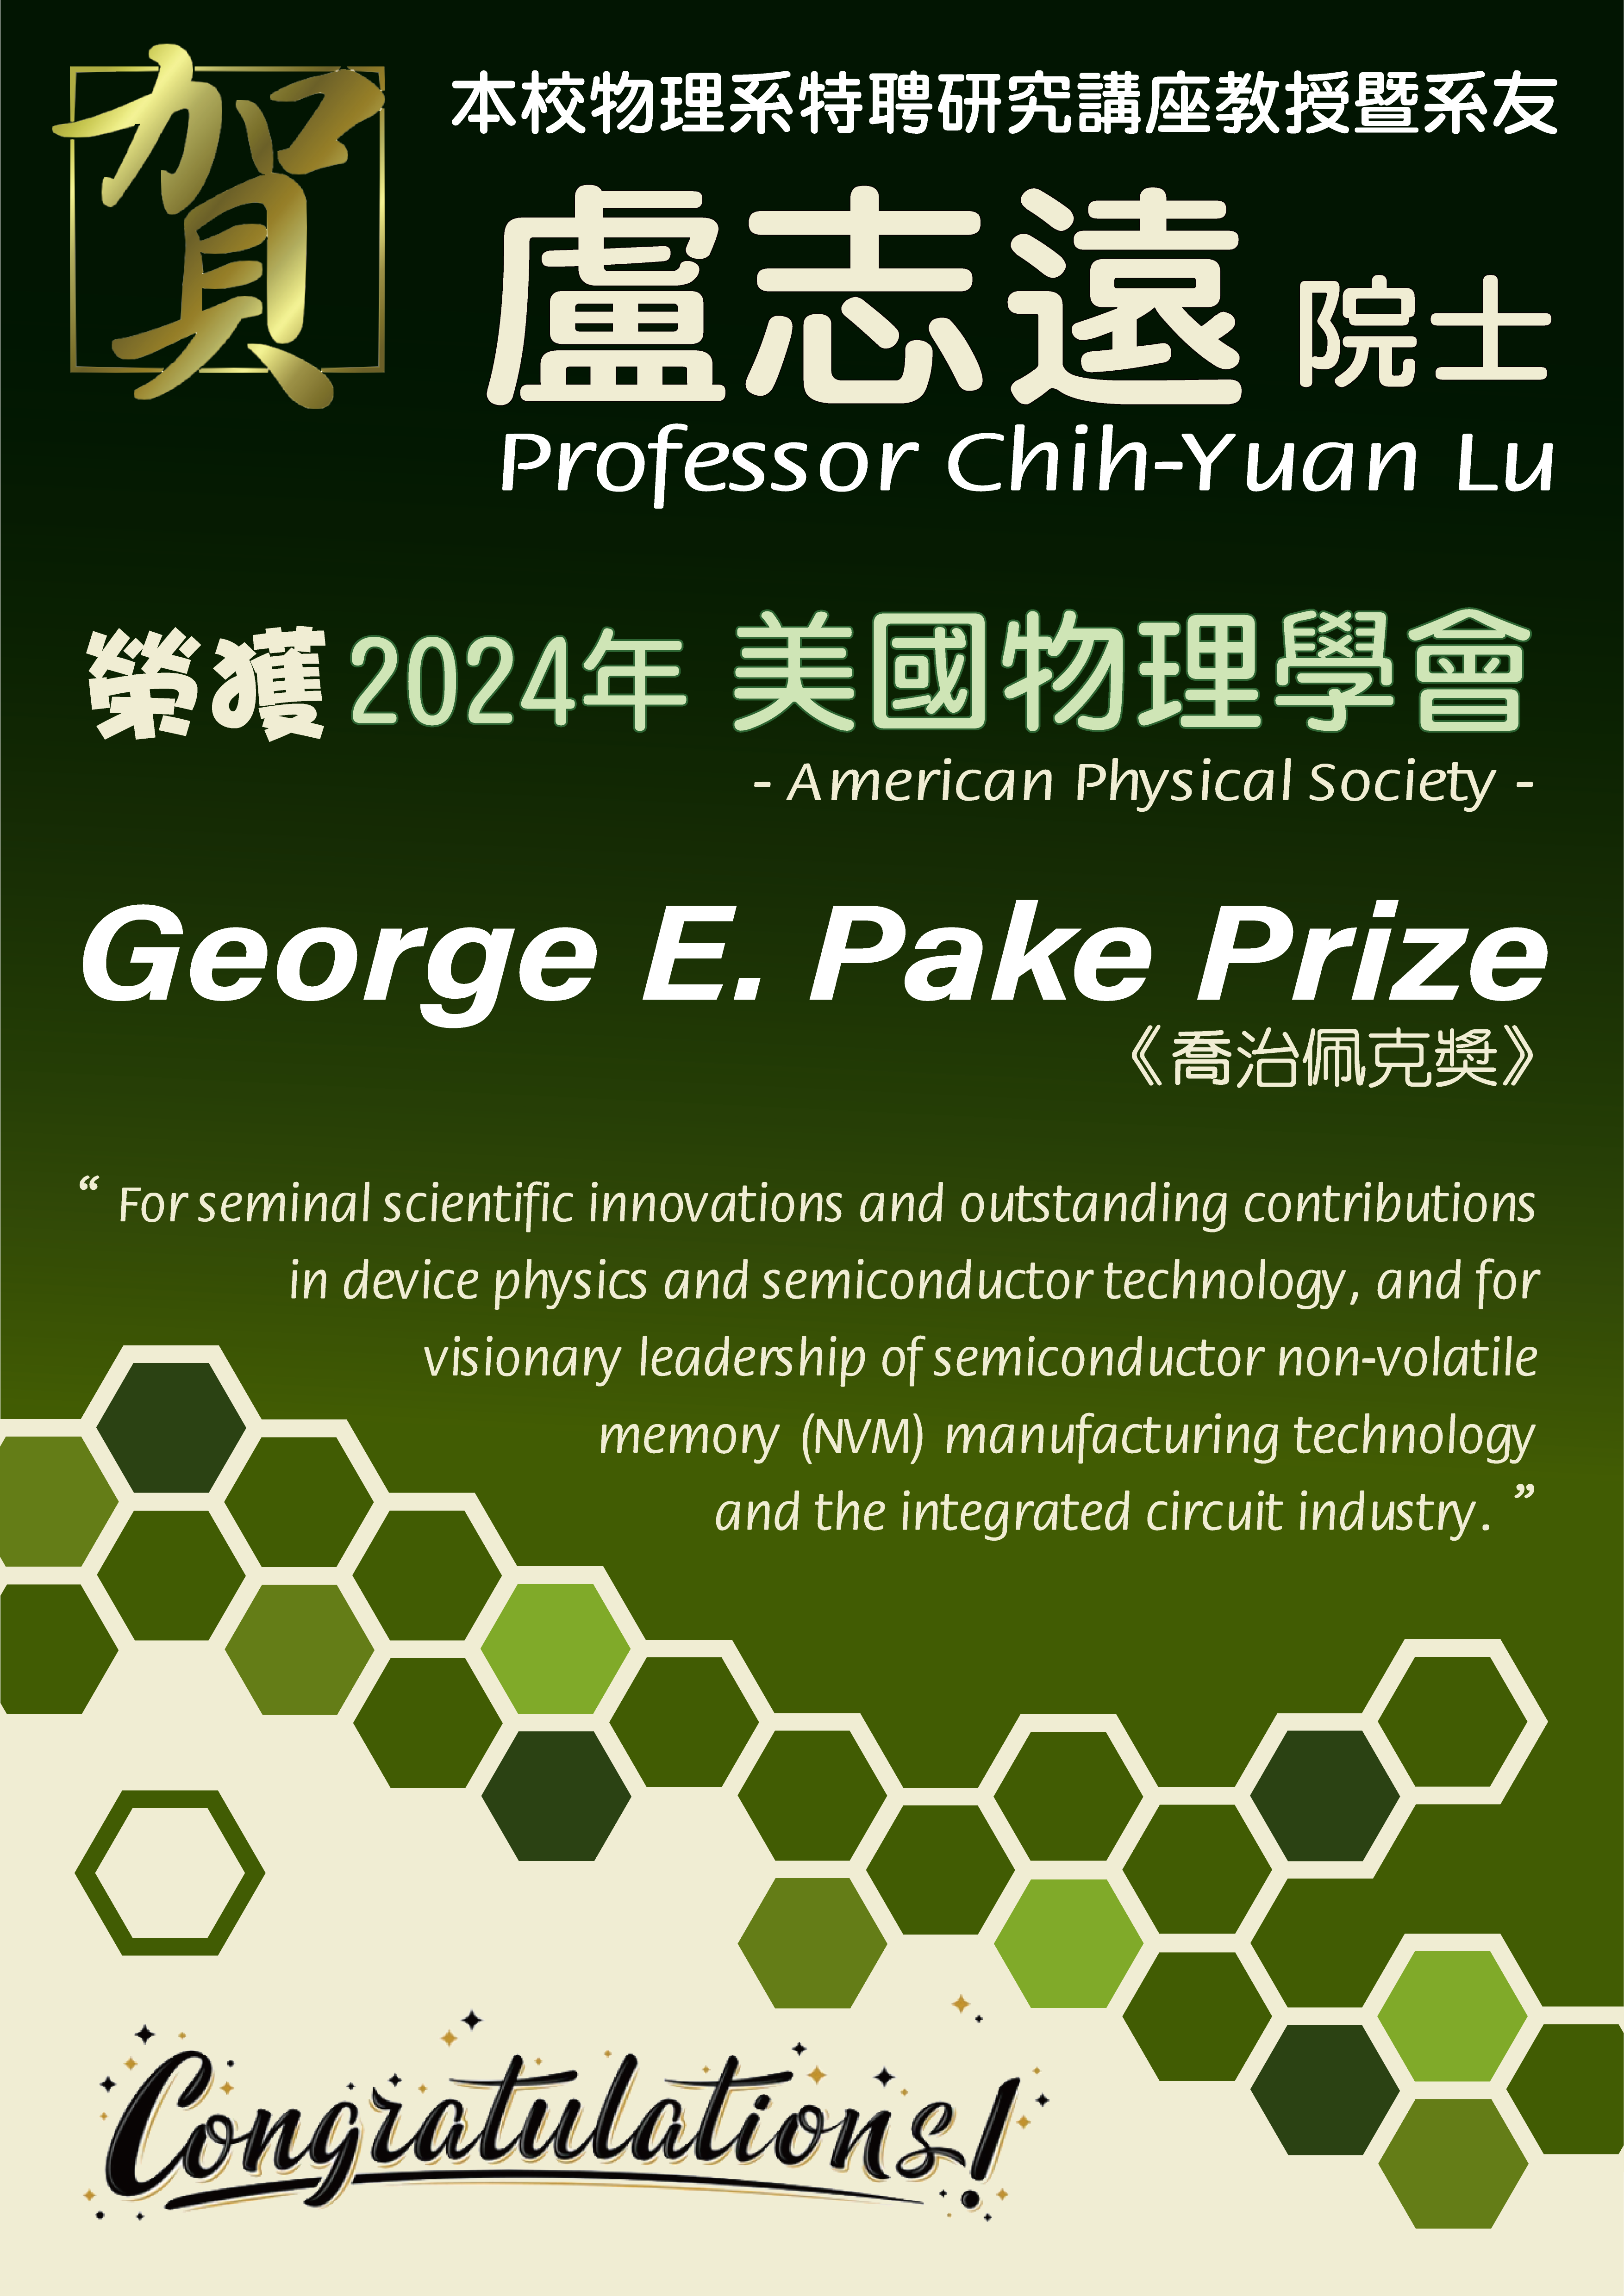 《賀》本校物理系特聘研究講座教授暨系友 盧志遠 院士 (Prof. Chih-Yuan Lu) 榮獲 2024年美國物理學會《喬治佩克獎》(George E. Pake Prize)